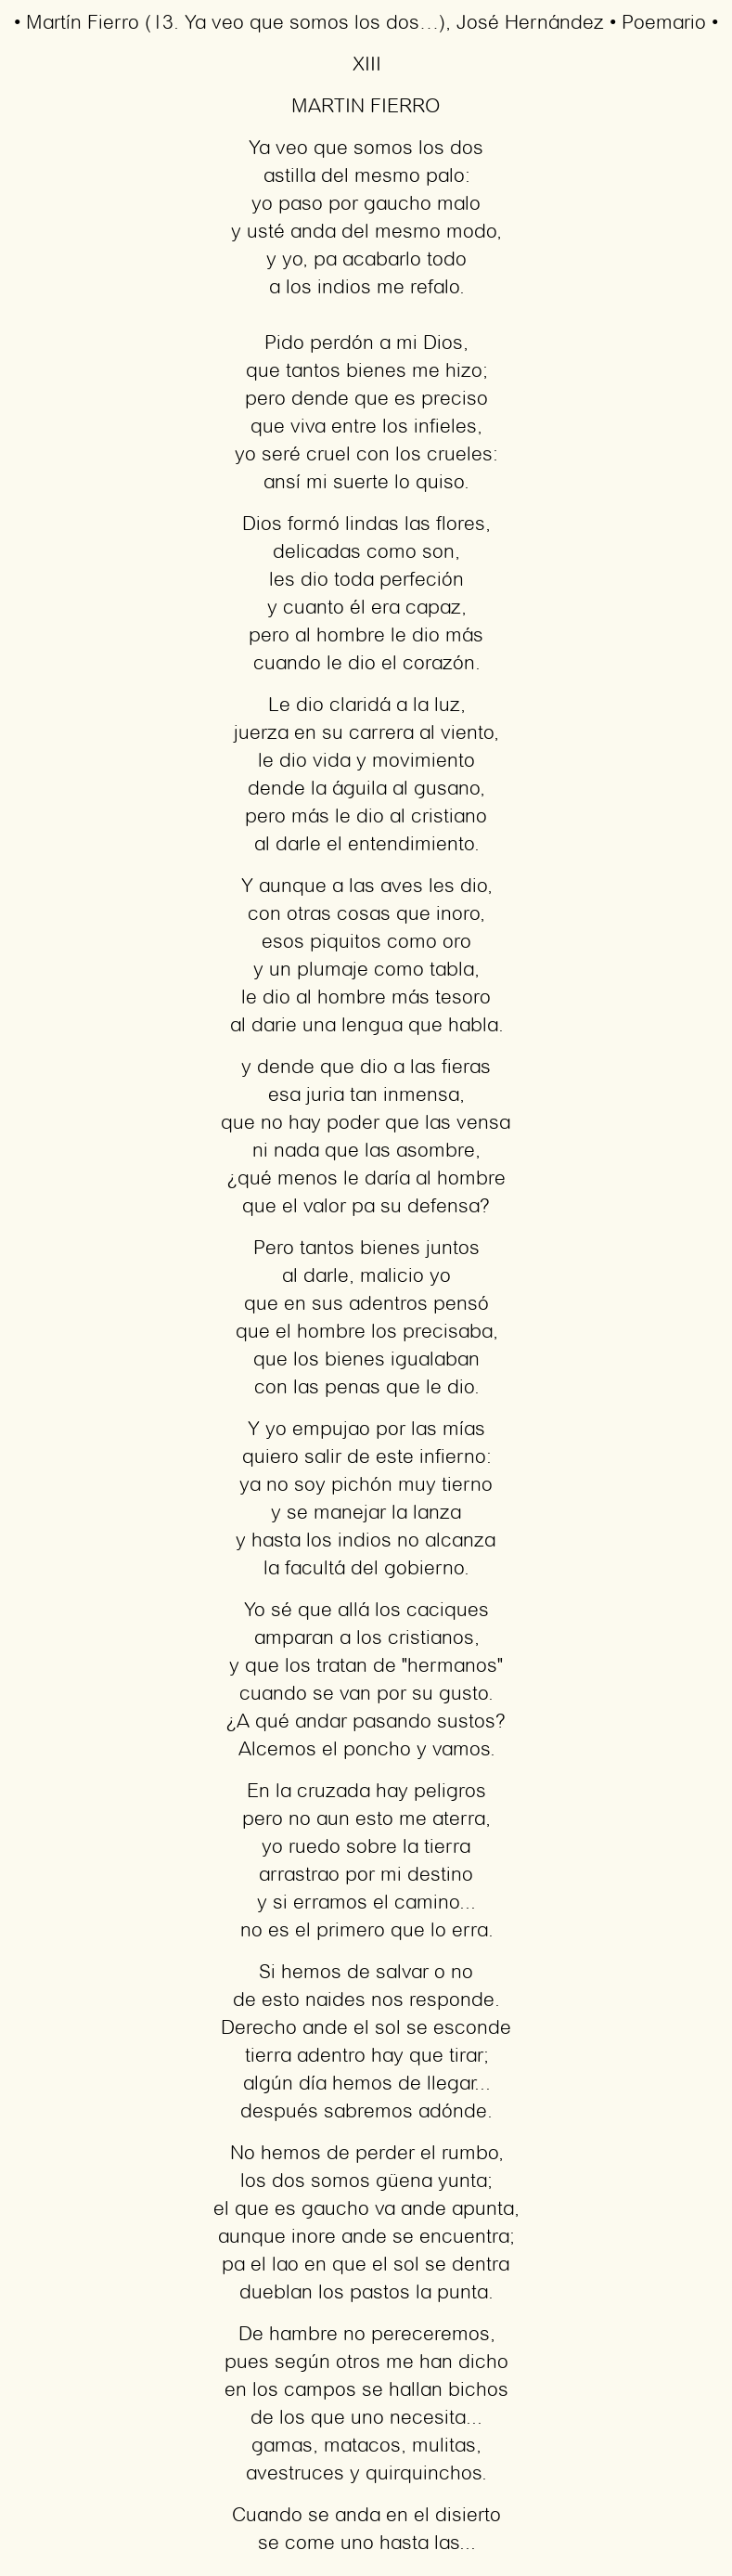 Imagen con el poema Martín Fierro (13. Ya veo que somos los dos…), por José Hernández